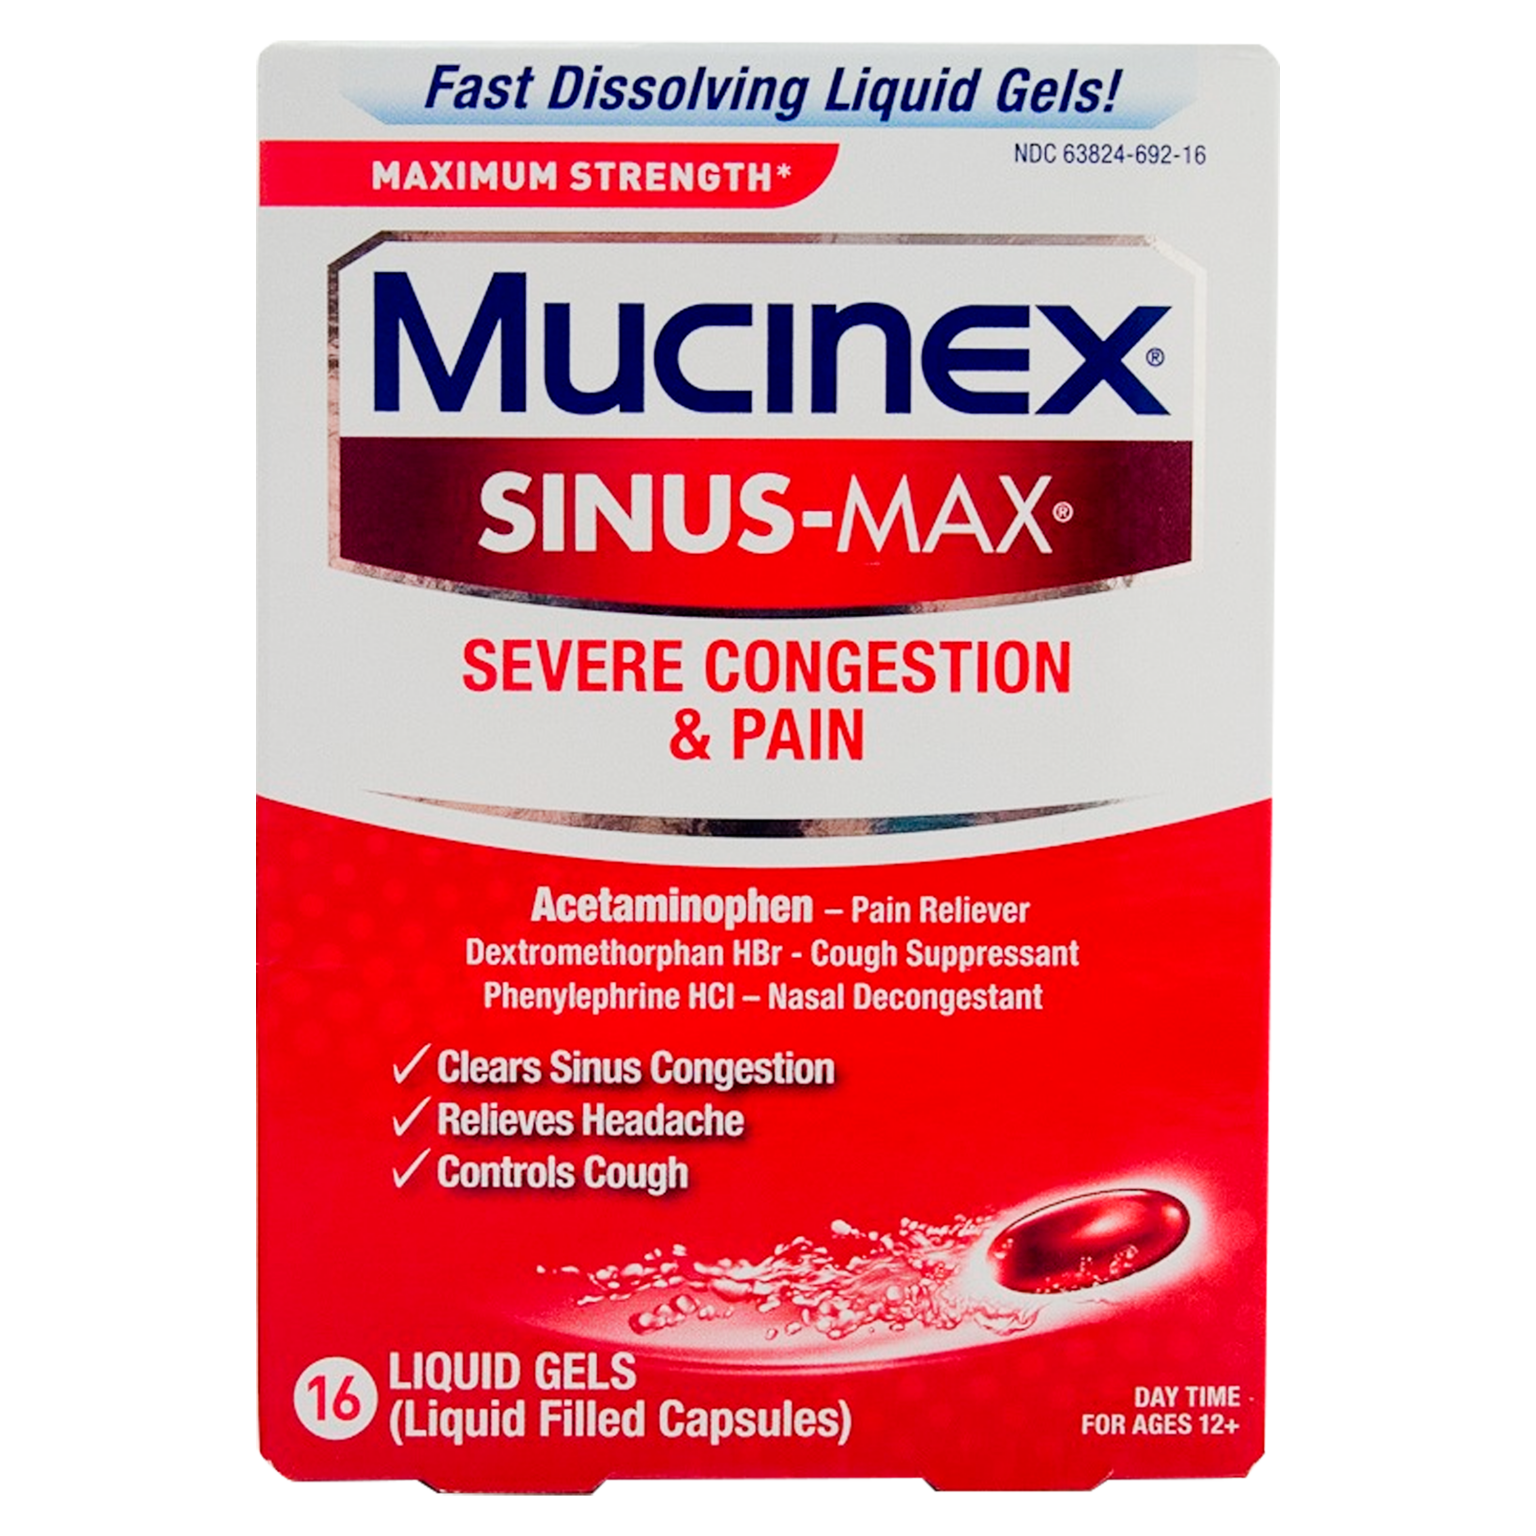 Mucinex SINUS